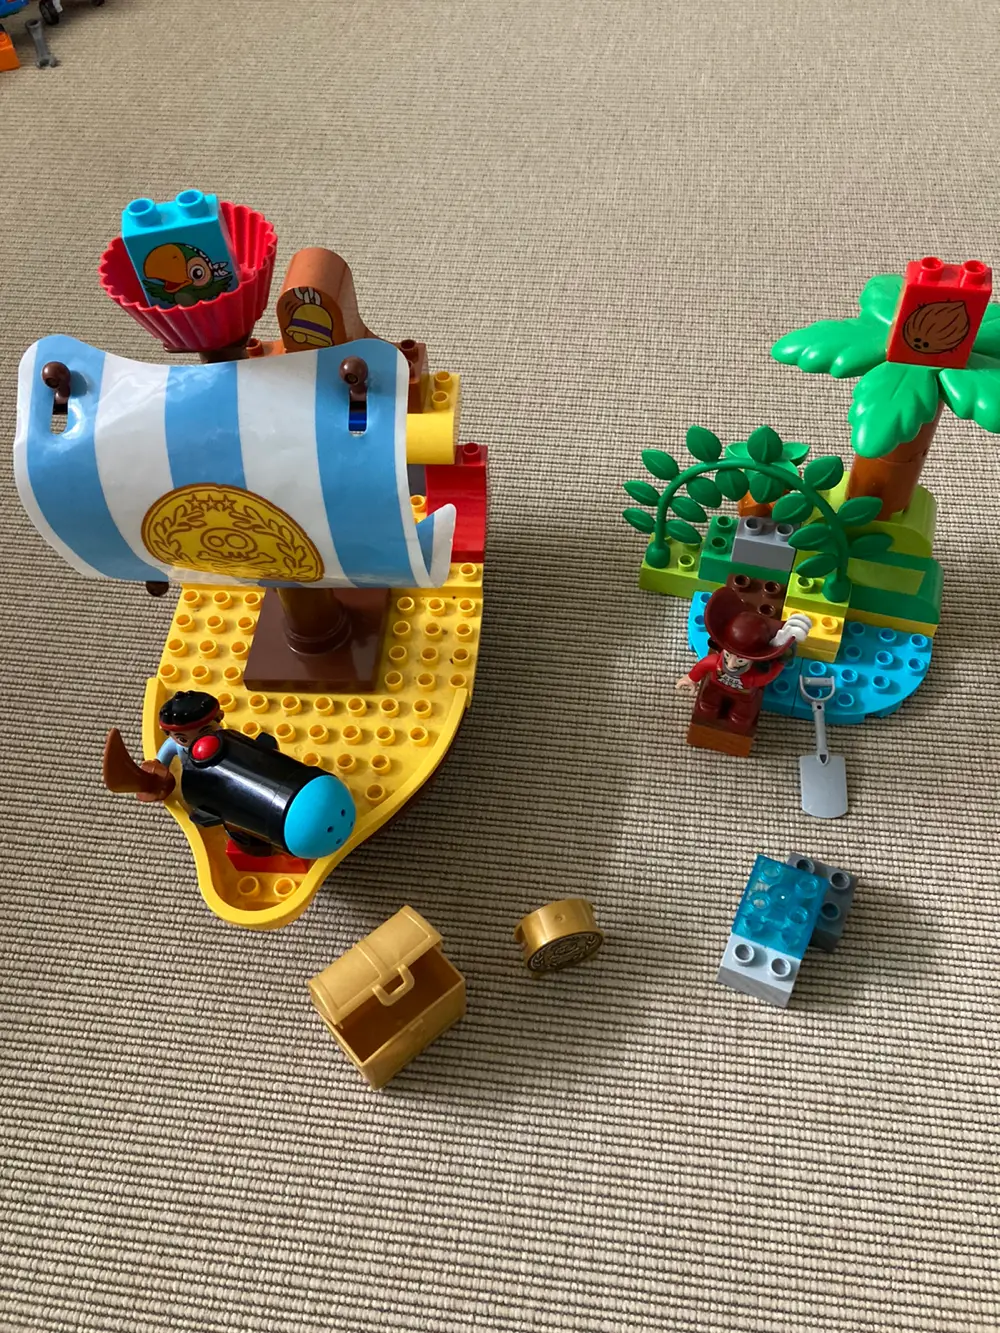 LEGO Duplo Jakes piratskib